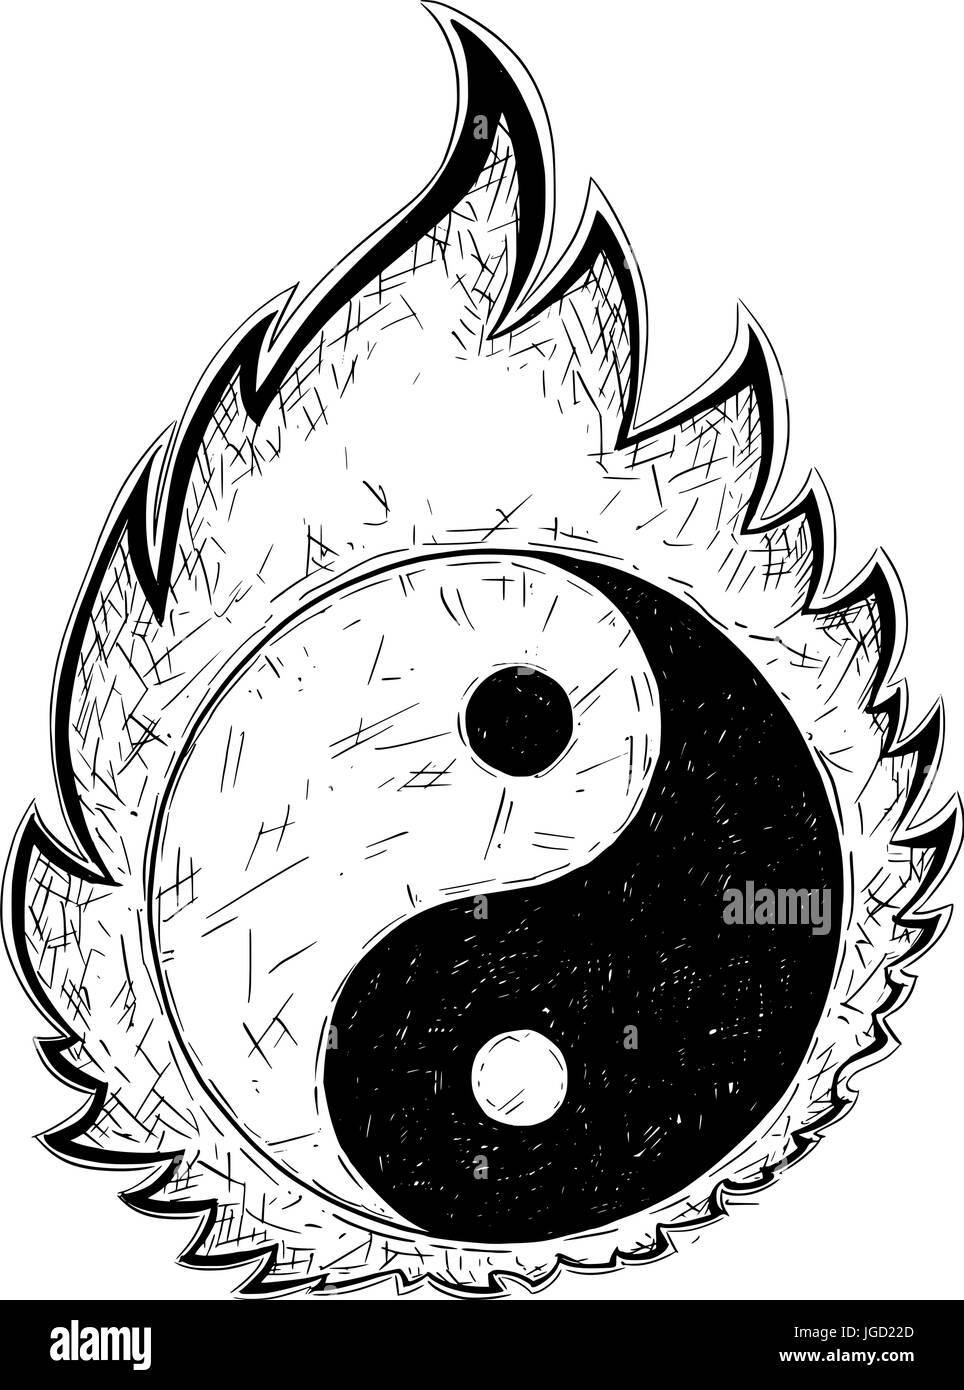 Disegnata a mano vector doodle illustrazione di yin yang jin jang simbolo. Illustrazione Vettoriale